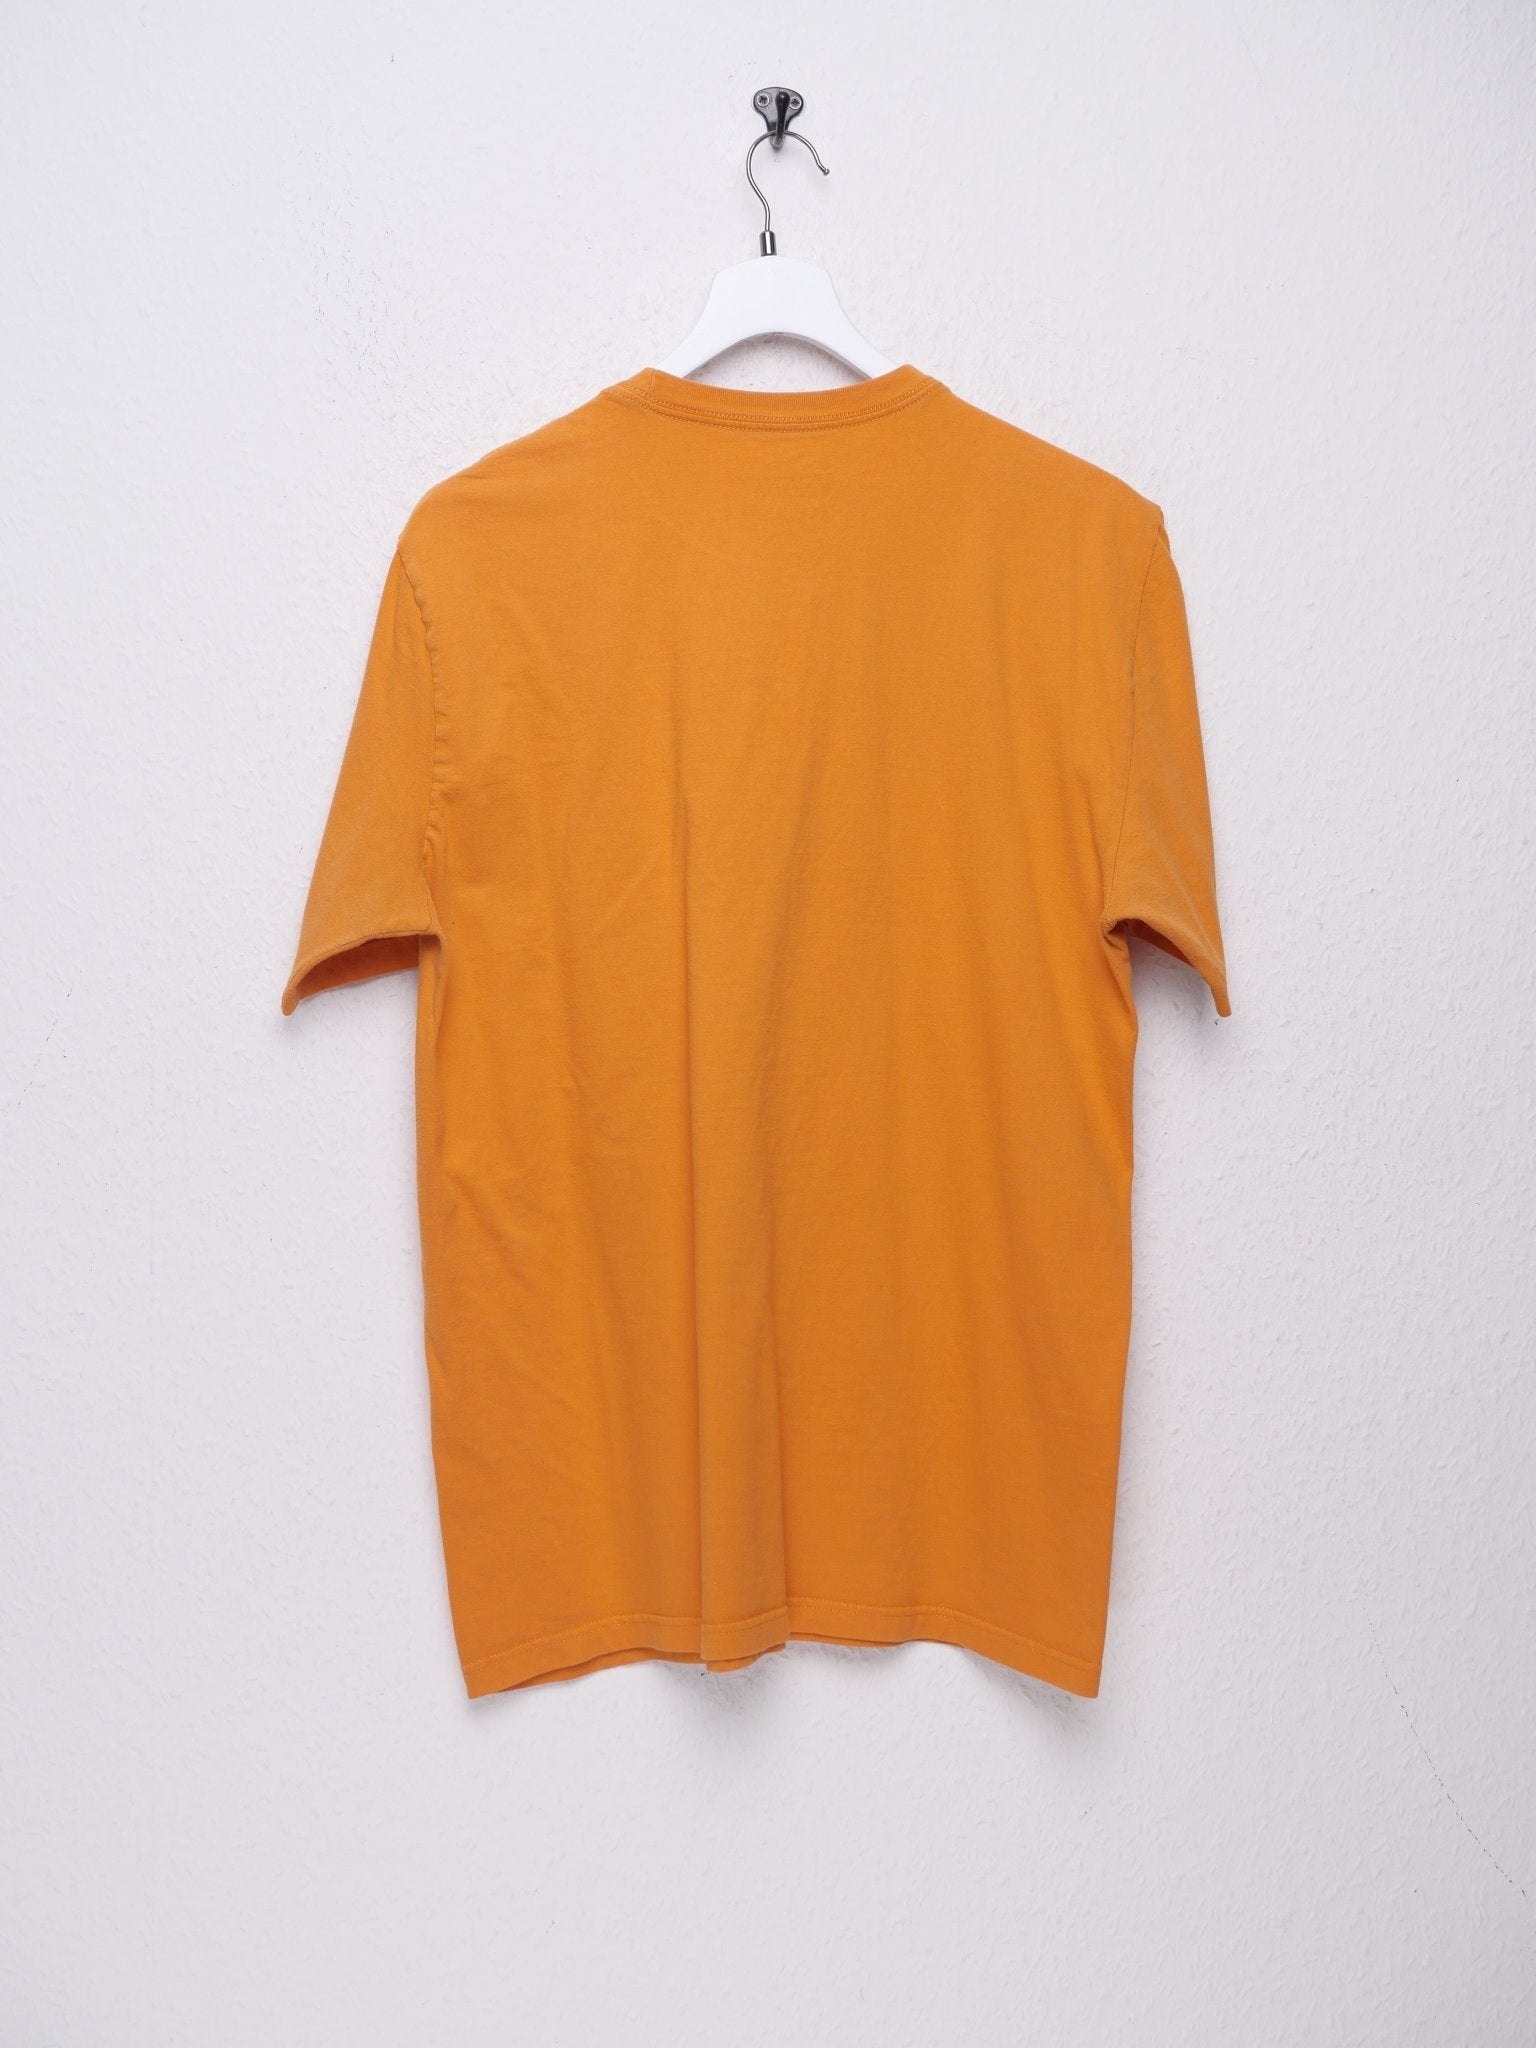 Nike printed Logo orange Shirt - Peeces